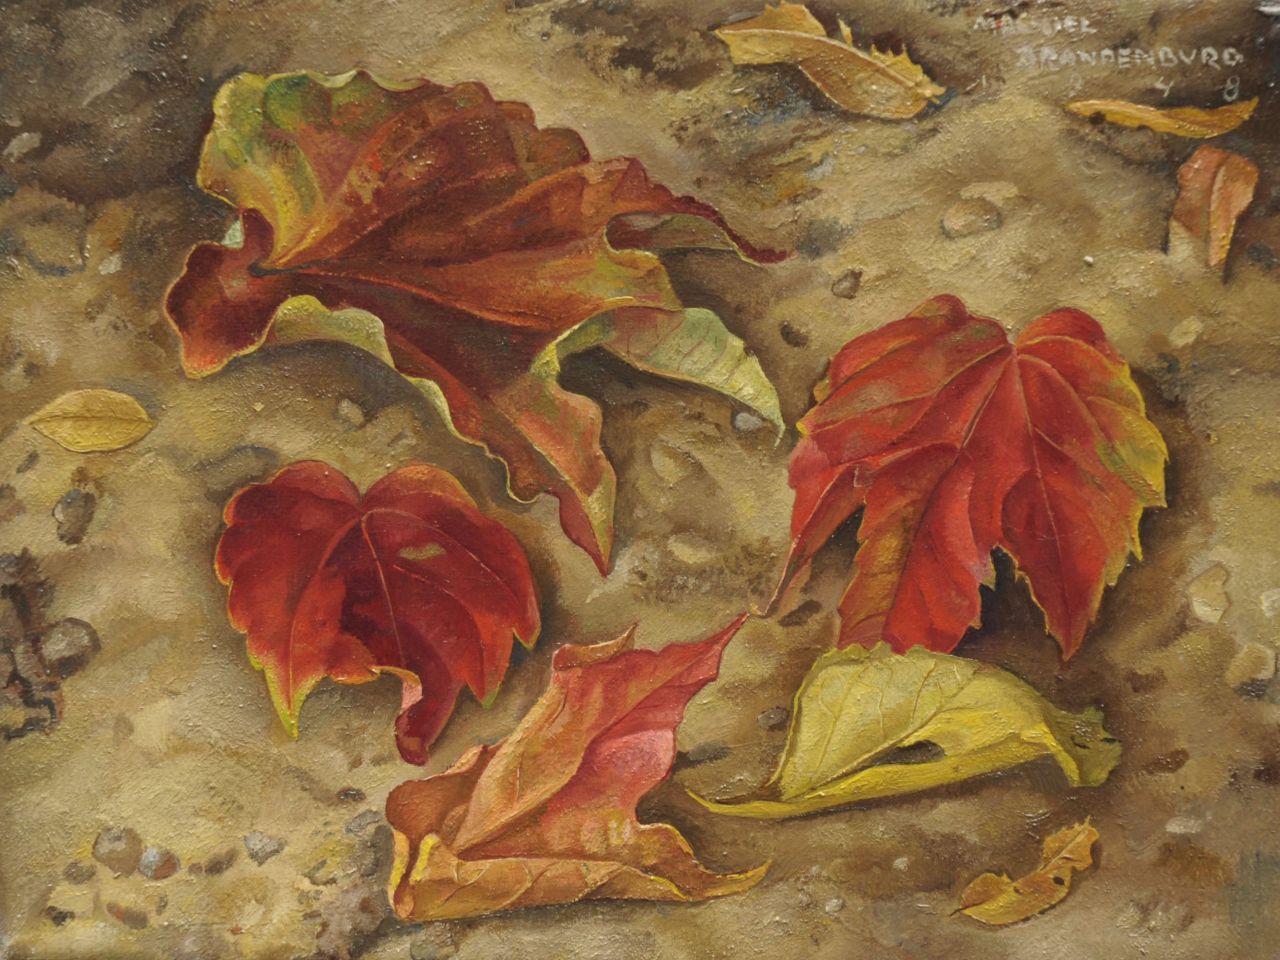 Brandenburg M.  | Machiel Brandenburg, Autumn leaves, Öl auf Leinwand 18,6 x 24,3 cm, signed u.r. und dated 1948